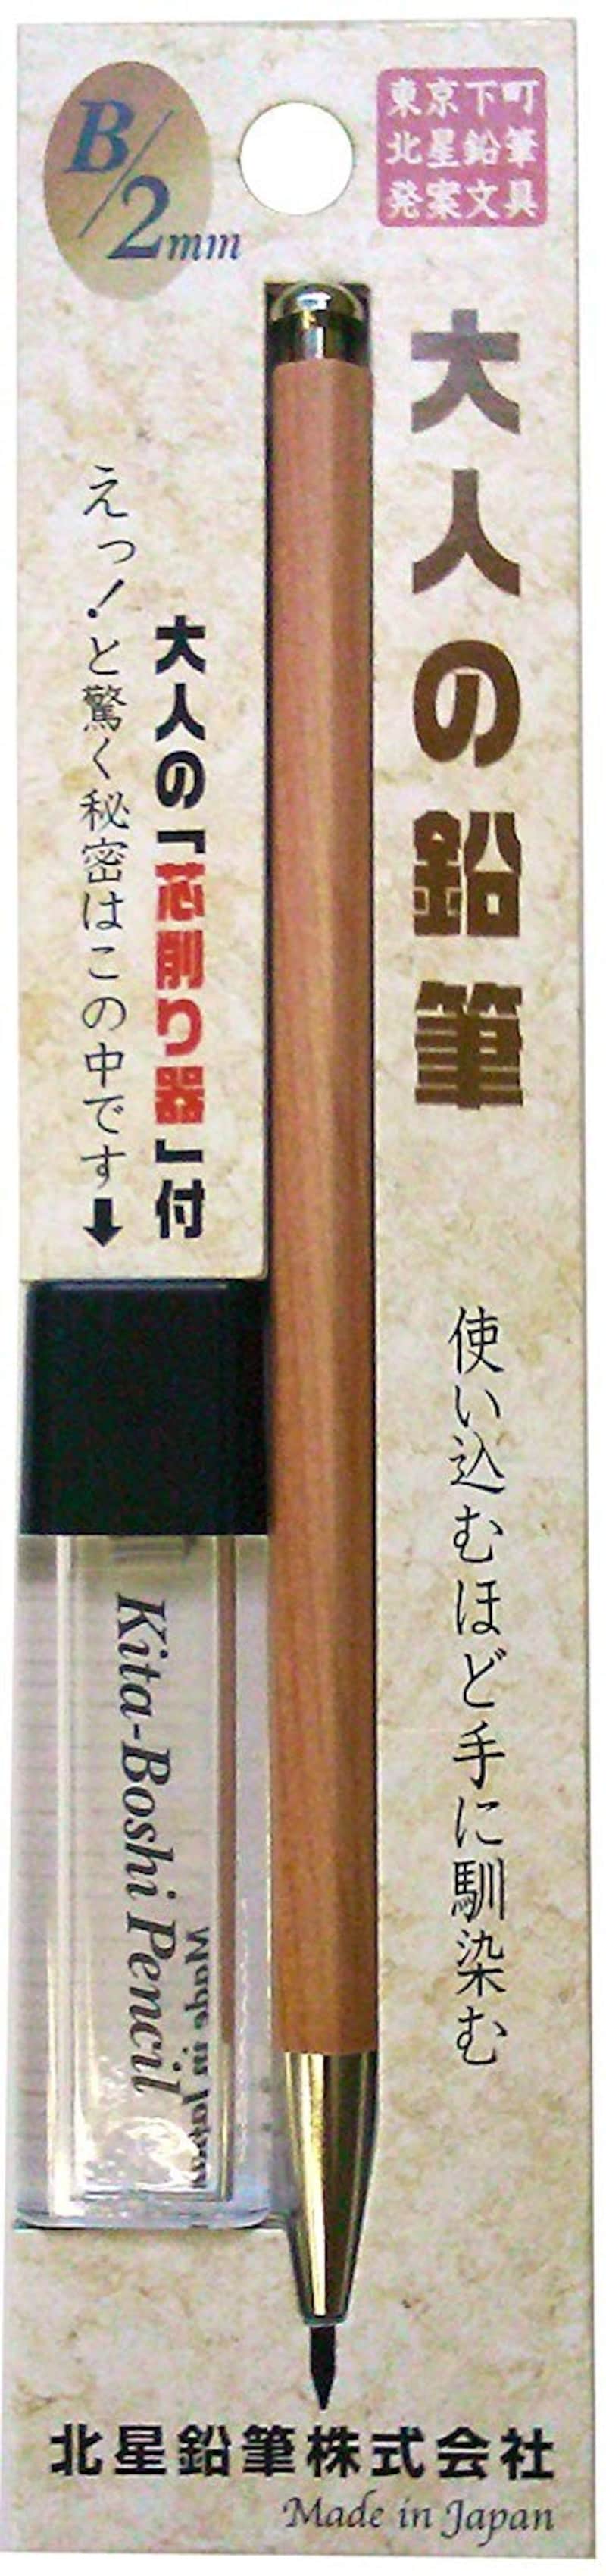 北星鉛筆,大人の鉛筆 芯削りセット,OTP-680NST